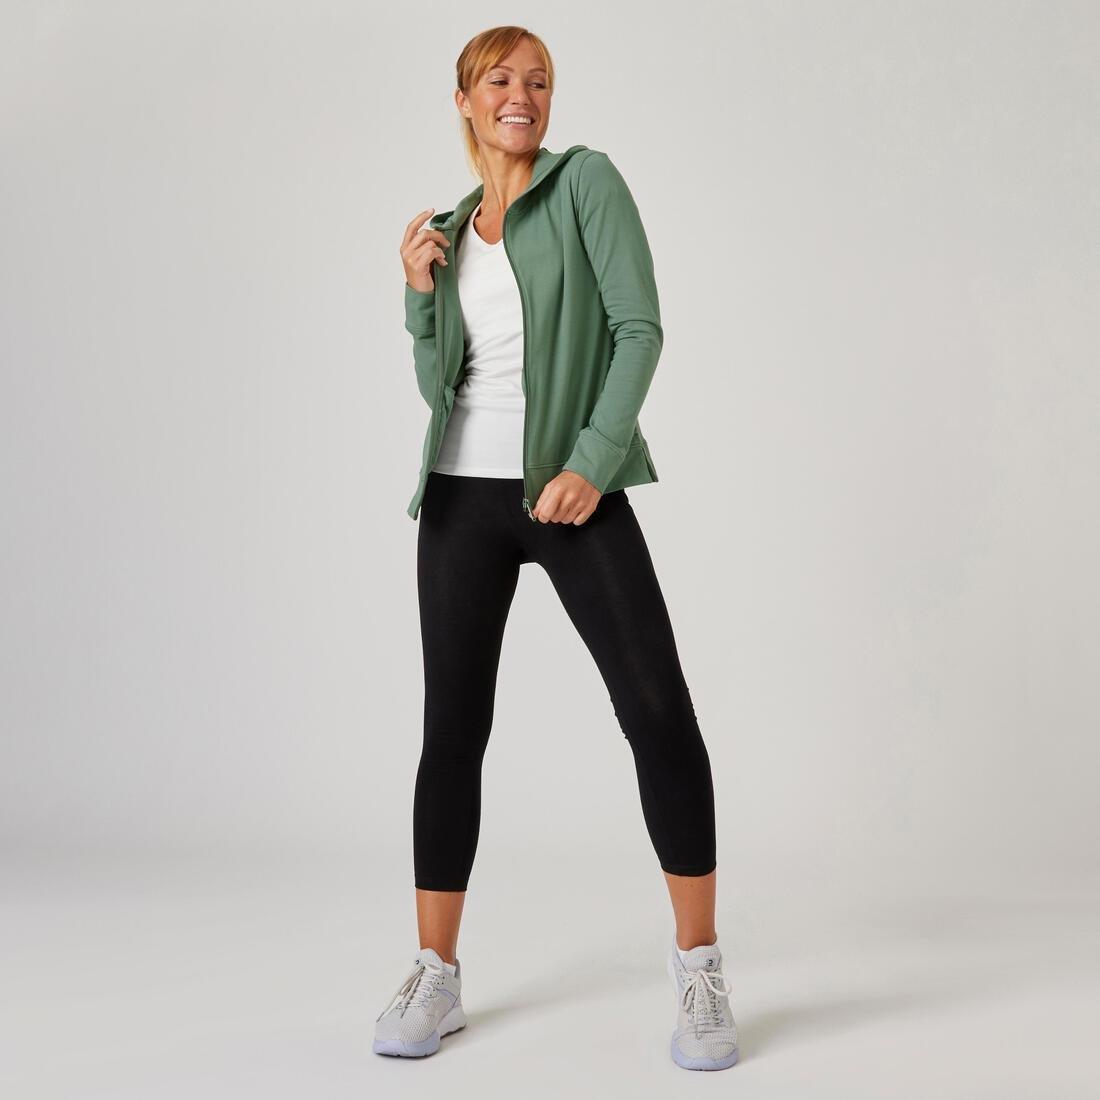 DOMYOS - Women Zip-Up Fitness Hoodie - 500, Green